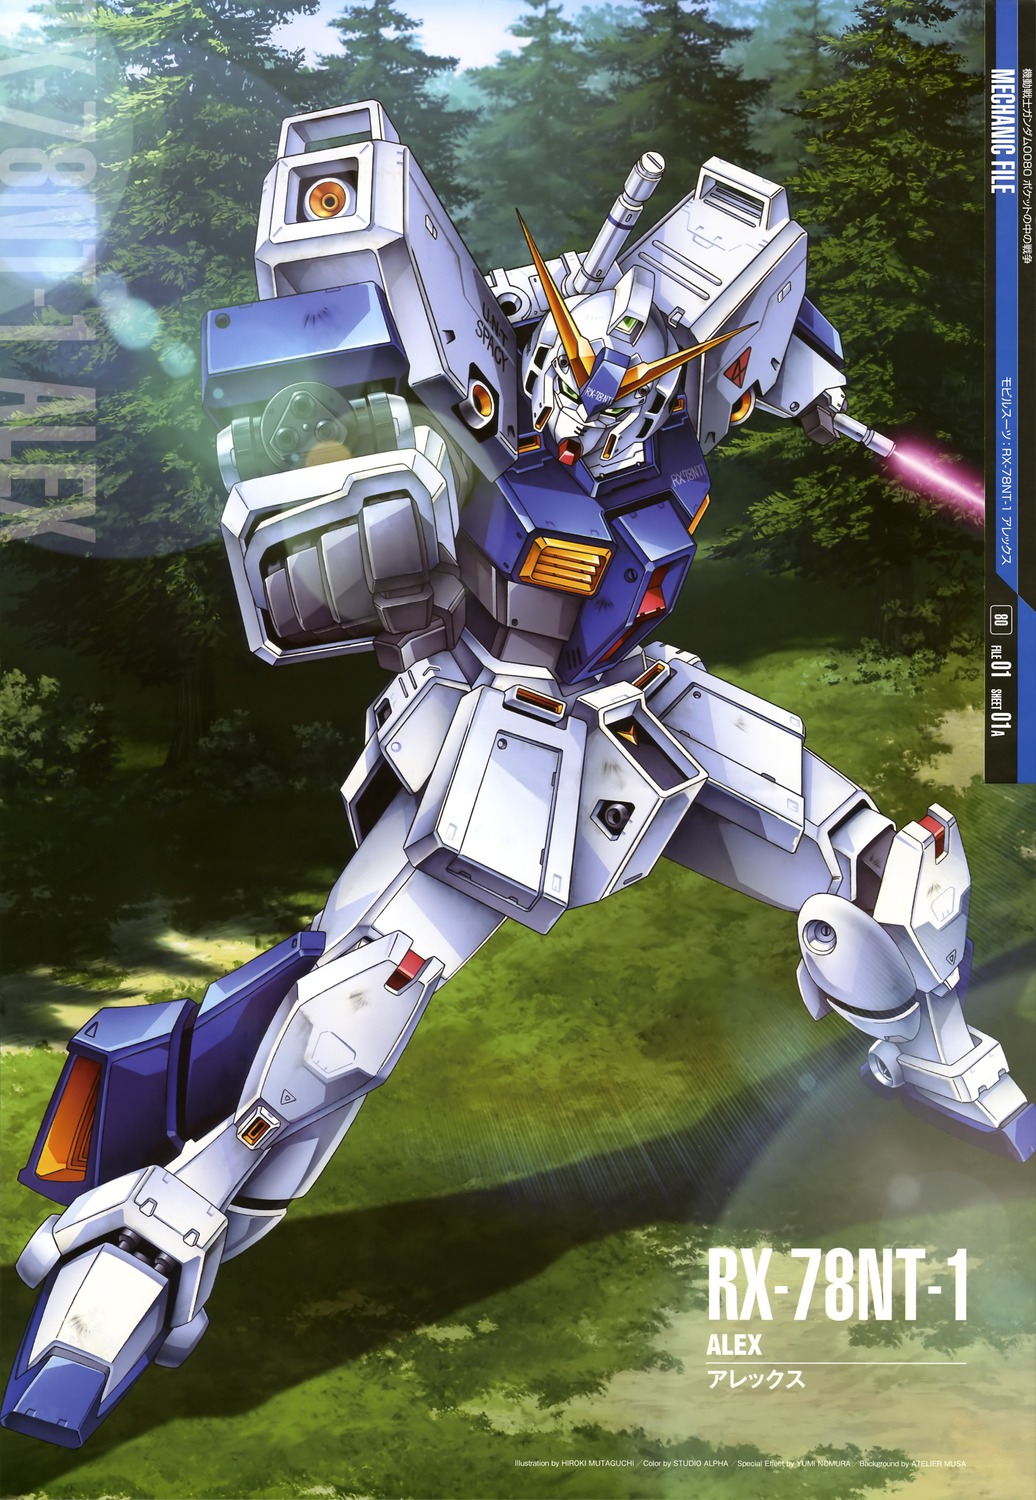 ... GUY: Mobile Suit Gundam Mechanic File - Wallpaper Size Images [Part 3